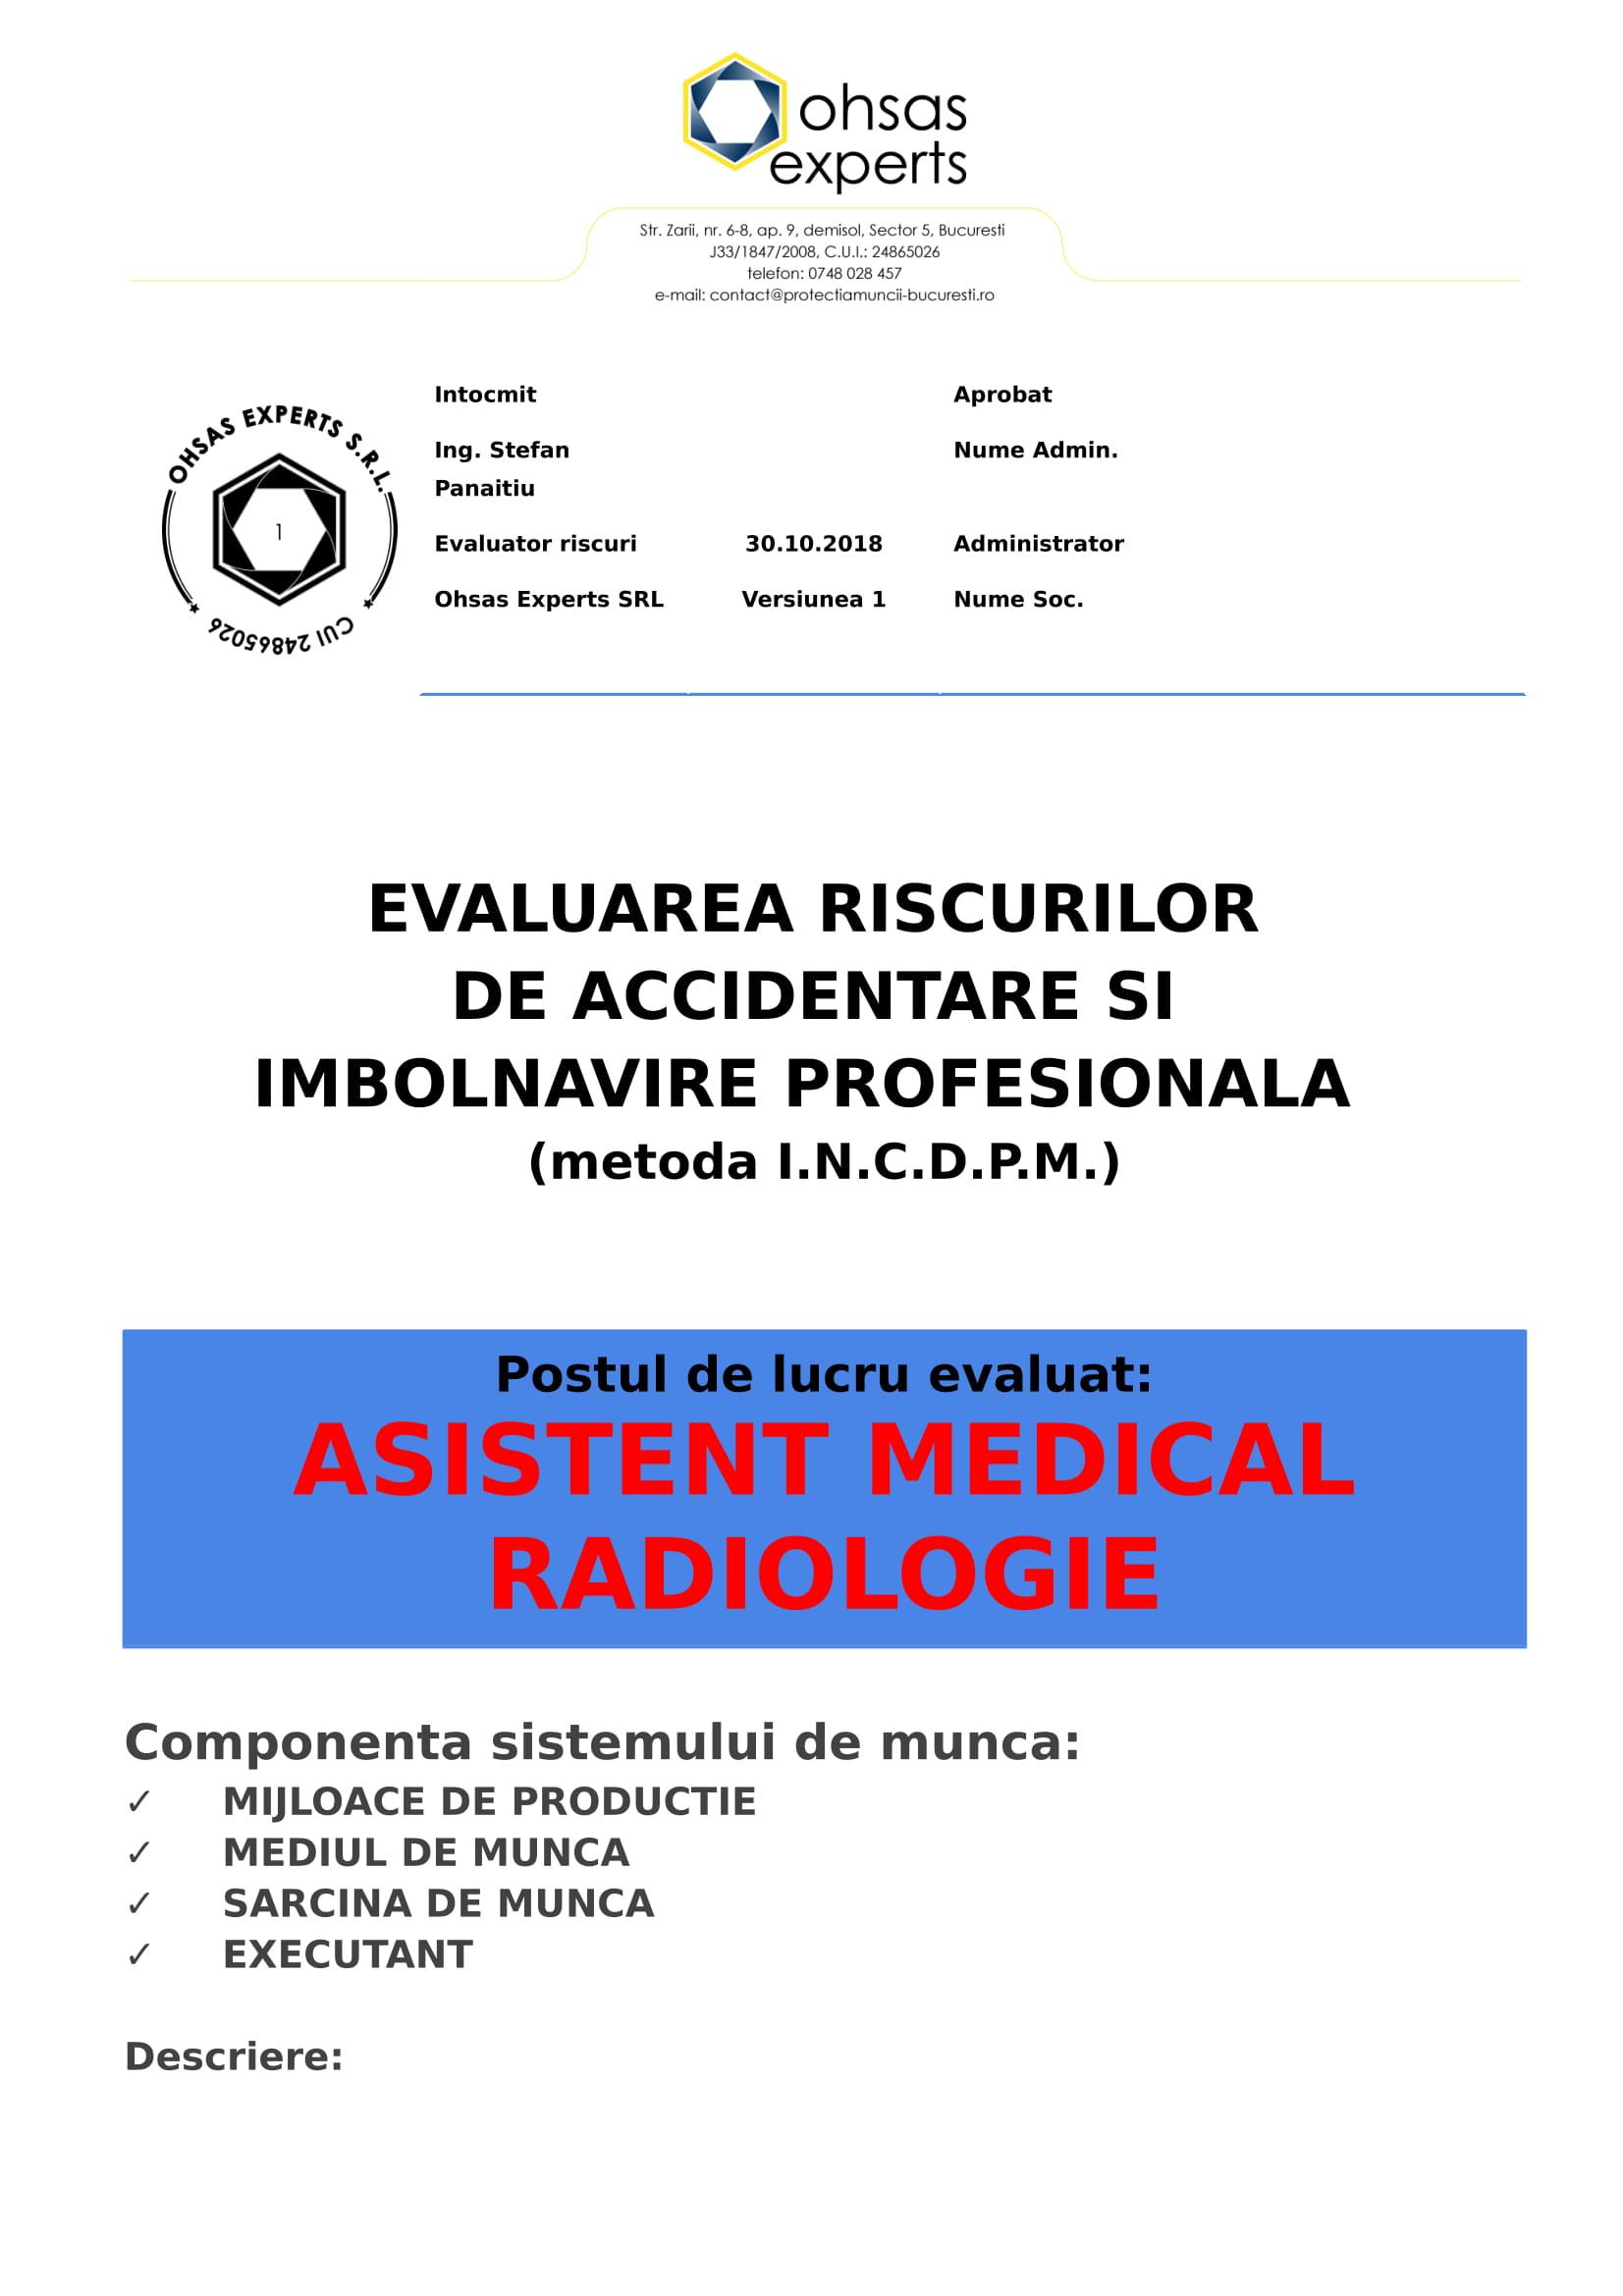 Evaluarea riscurilor de accidentare si imbolnavire profesionala Asistent Medical Radiologie